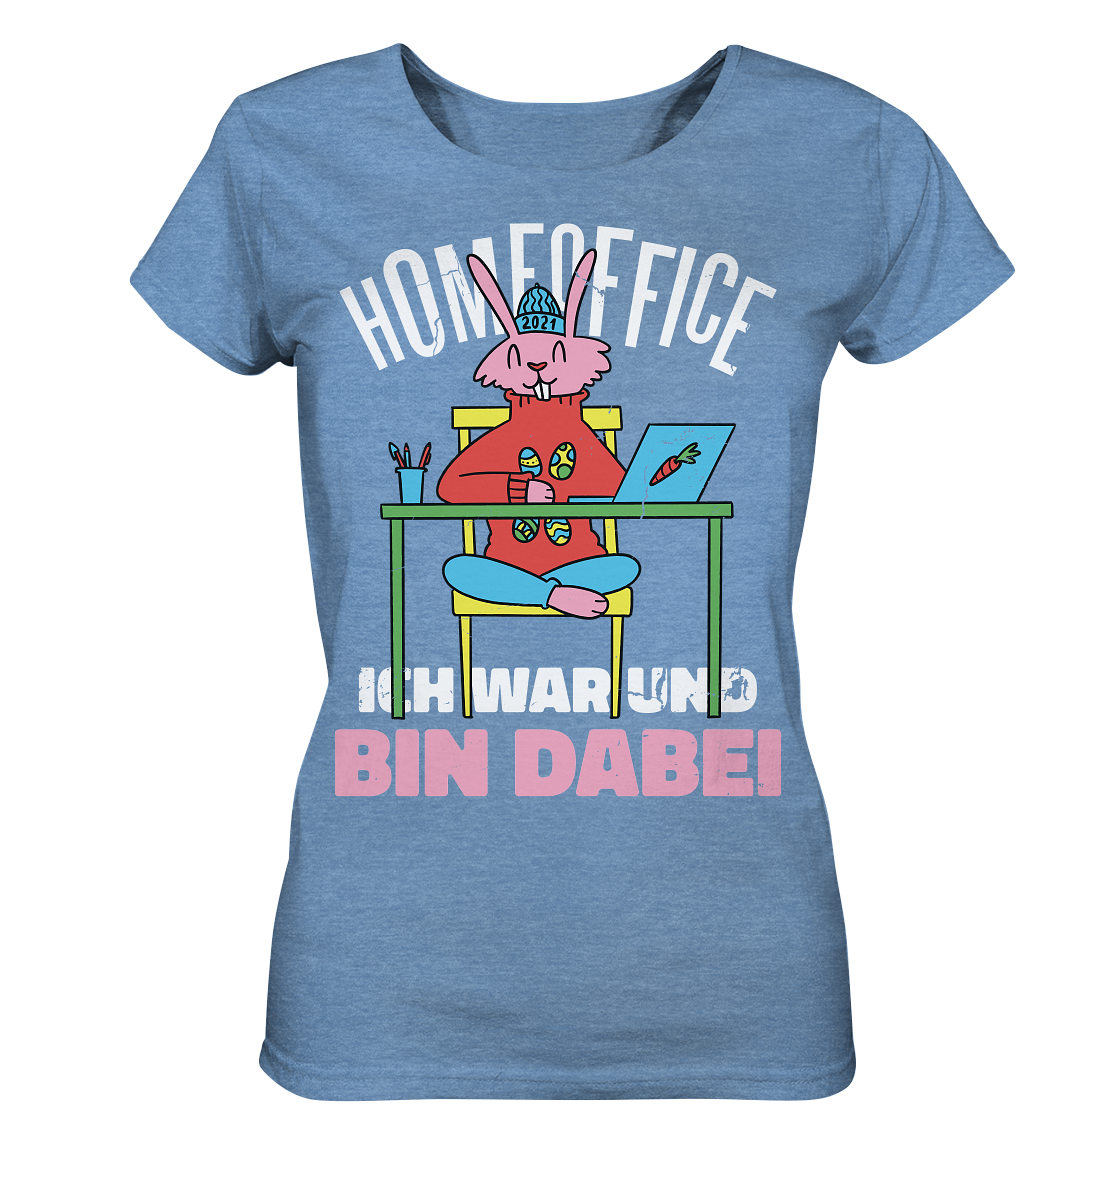 Homeoffice ich war und bin dabei - Ladies Organic Shirt (meliert)- Damen Shirt - Online Kaufhaus München